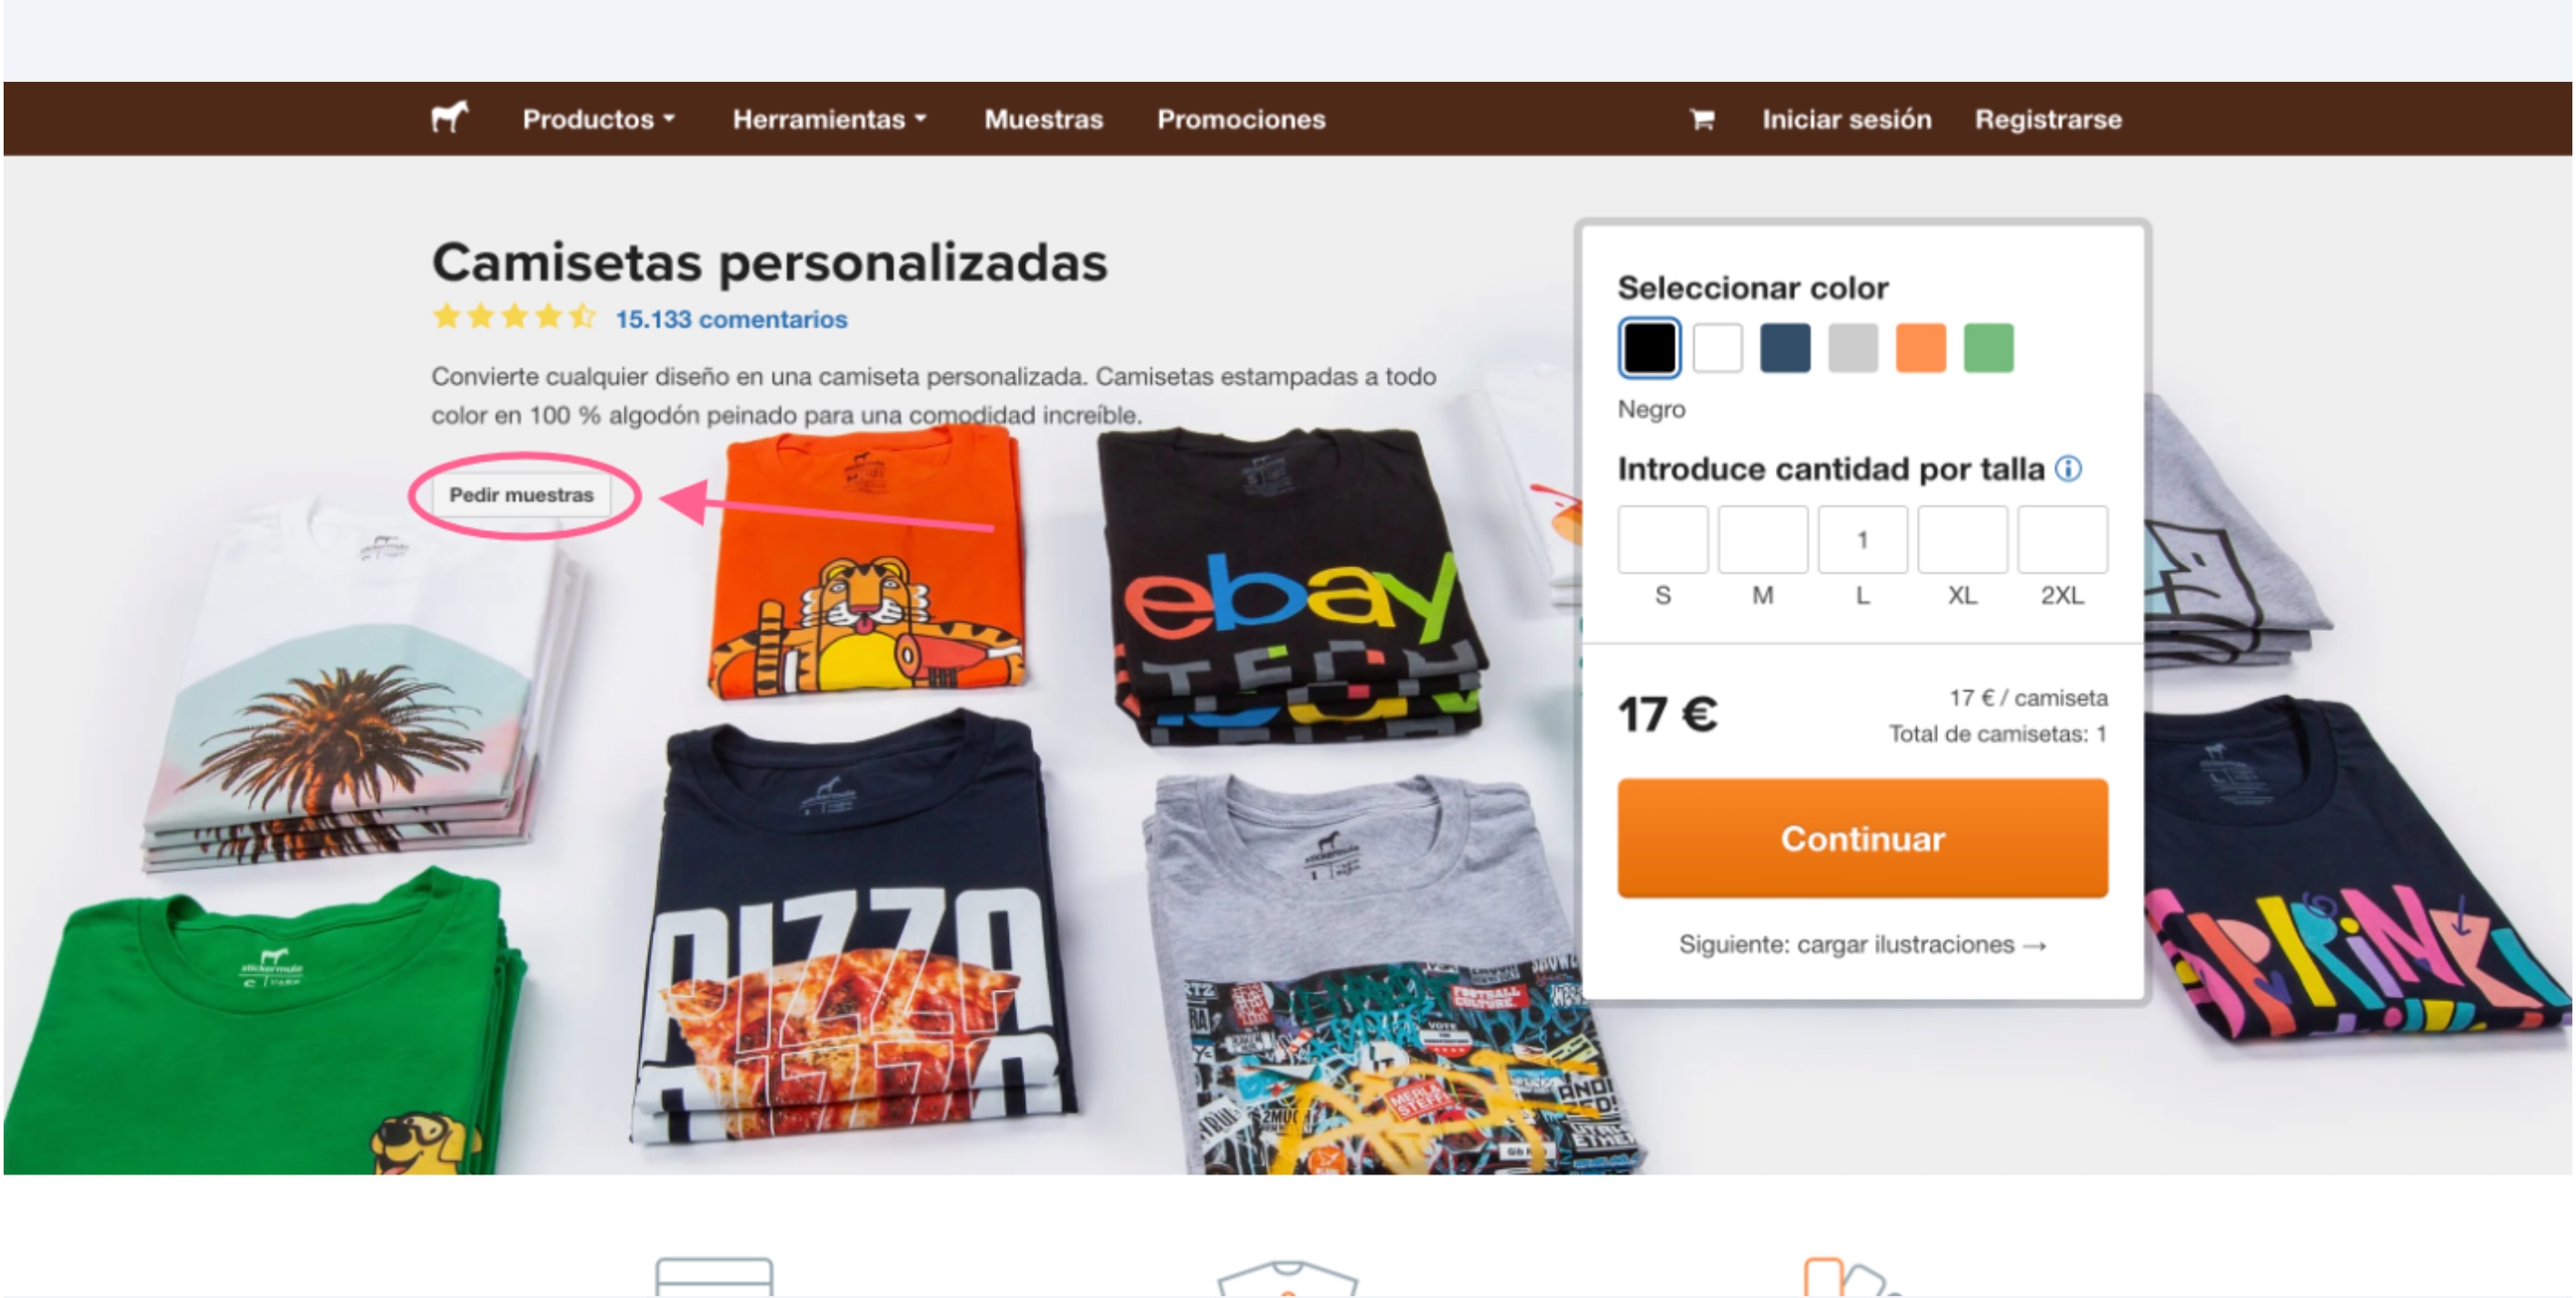 captura de pantalla del botón de muestras de camisetas personalizadas de stickermule para pedir camisetas impresas personalizadas